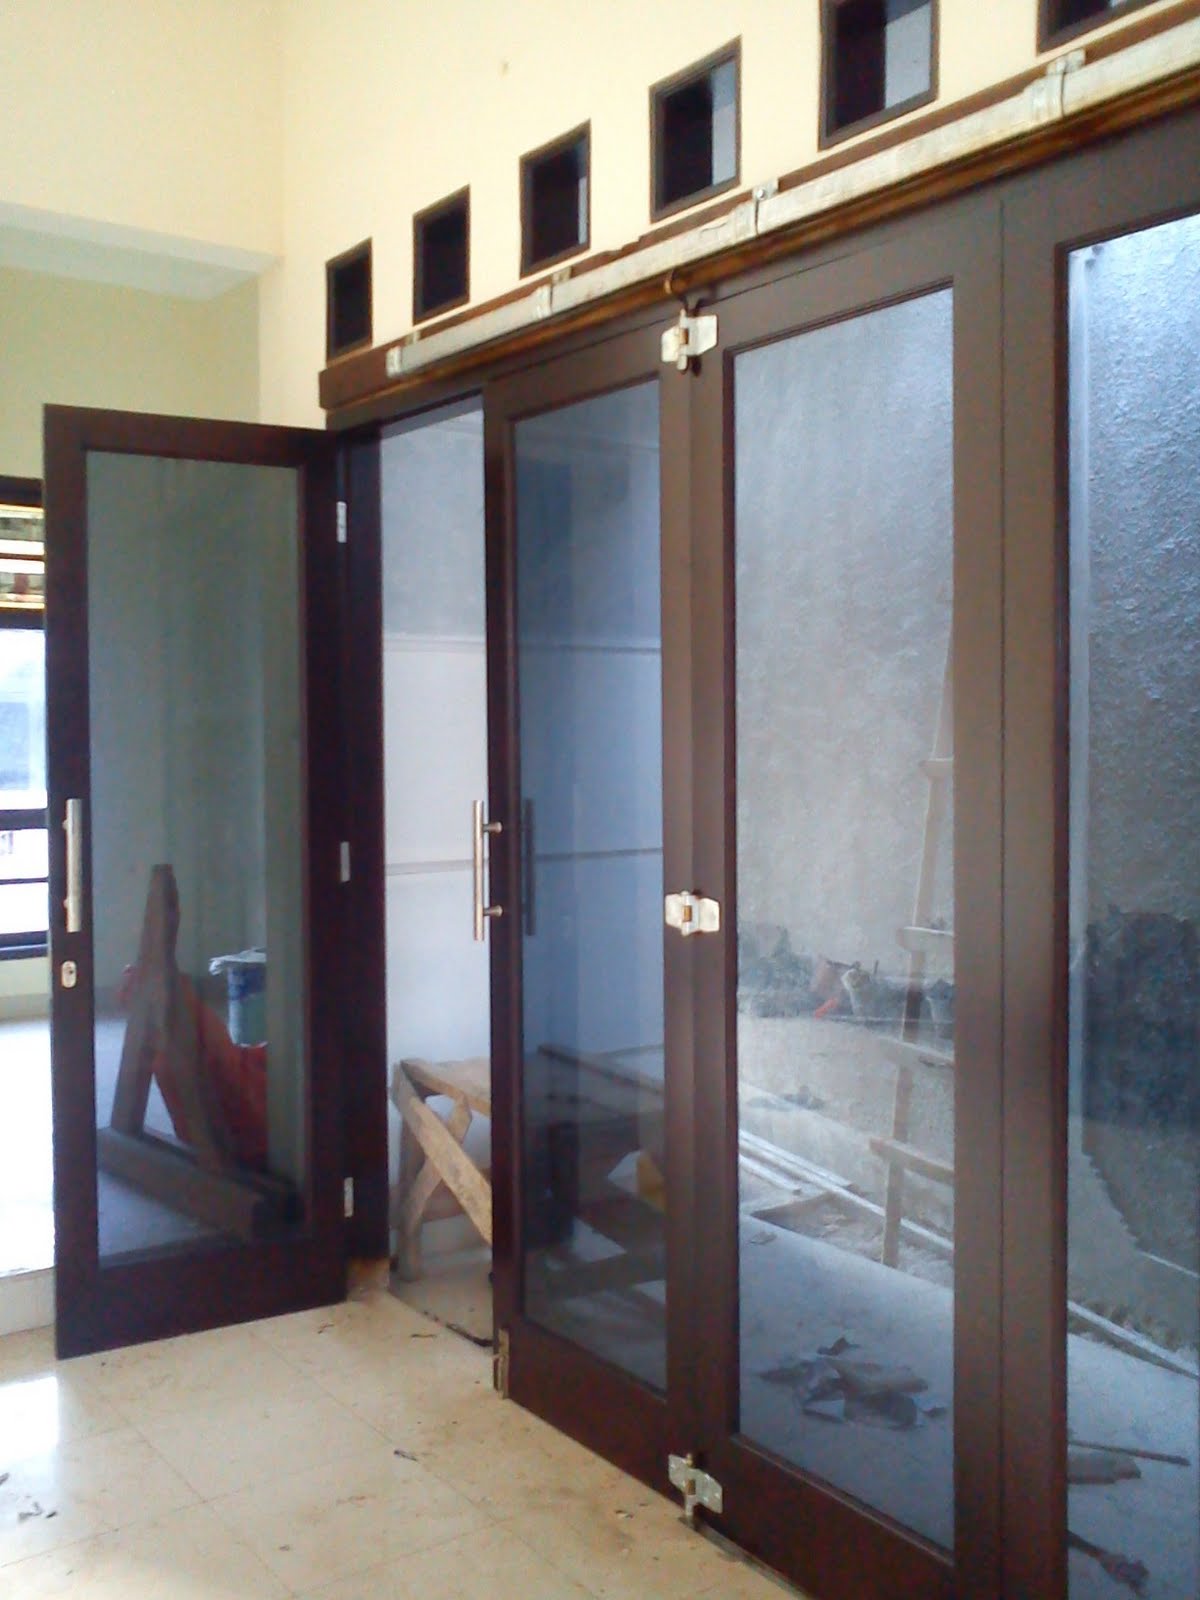 Desain Rumah Minimalis Pintu Samping. home design interior 